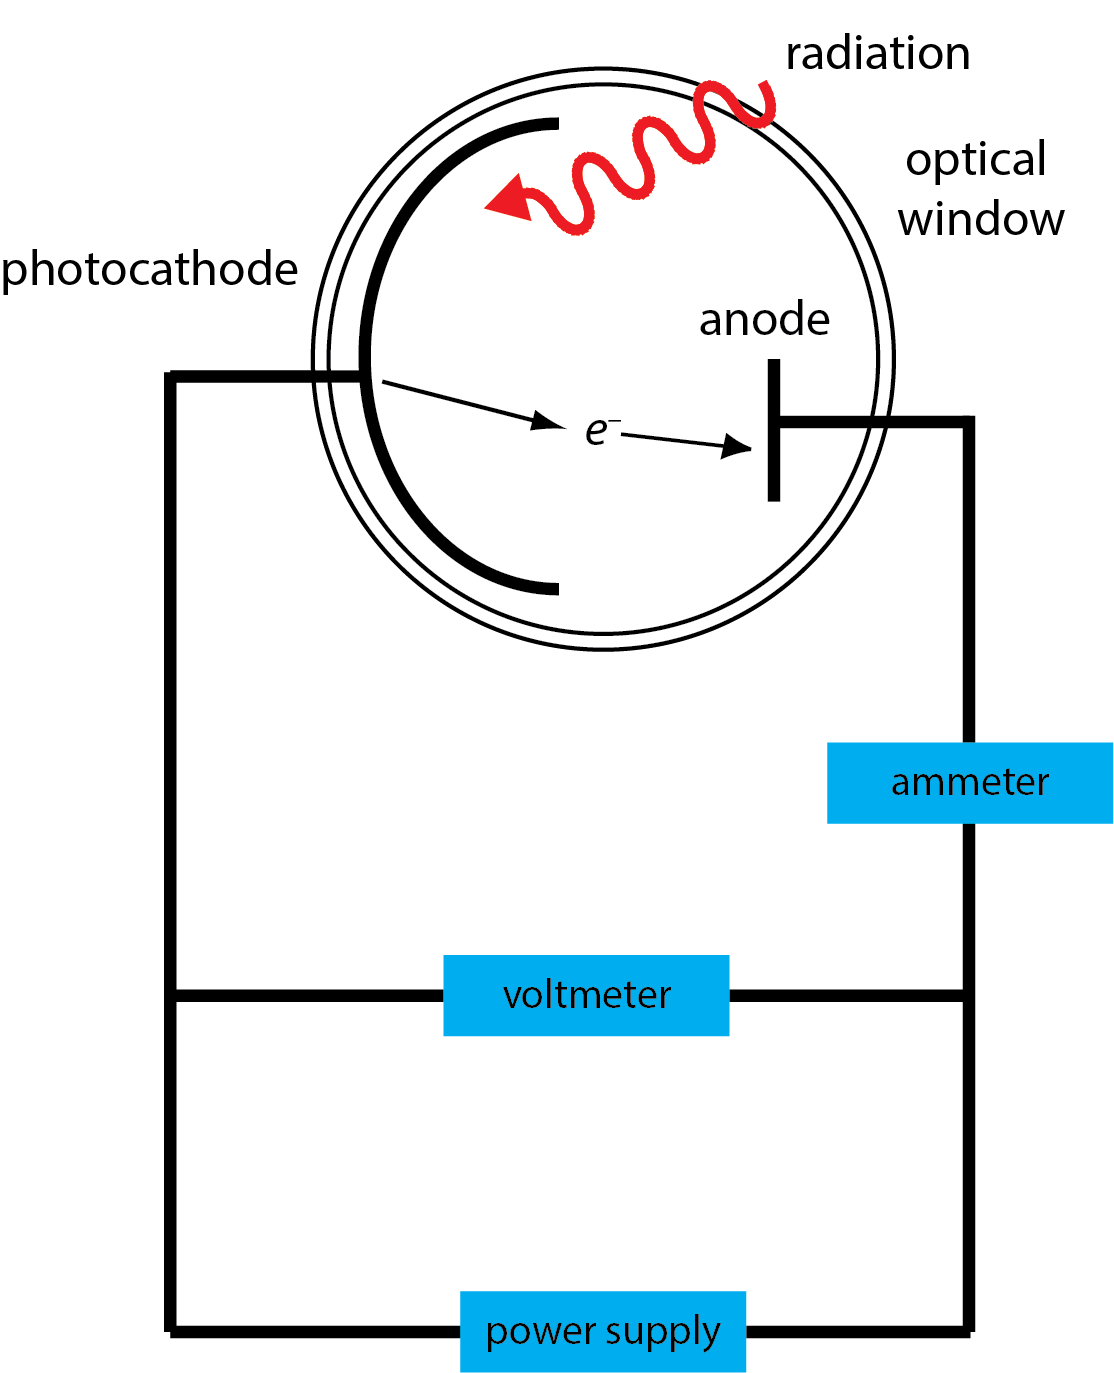 Ilustración de una célula fotoeléctrica.